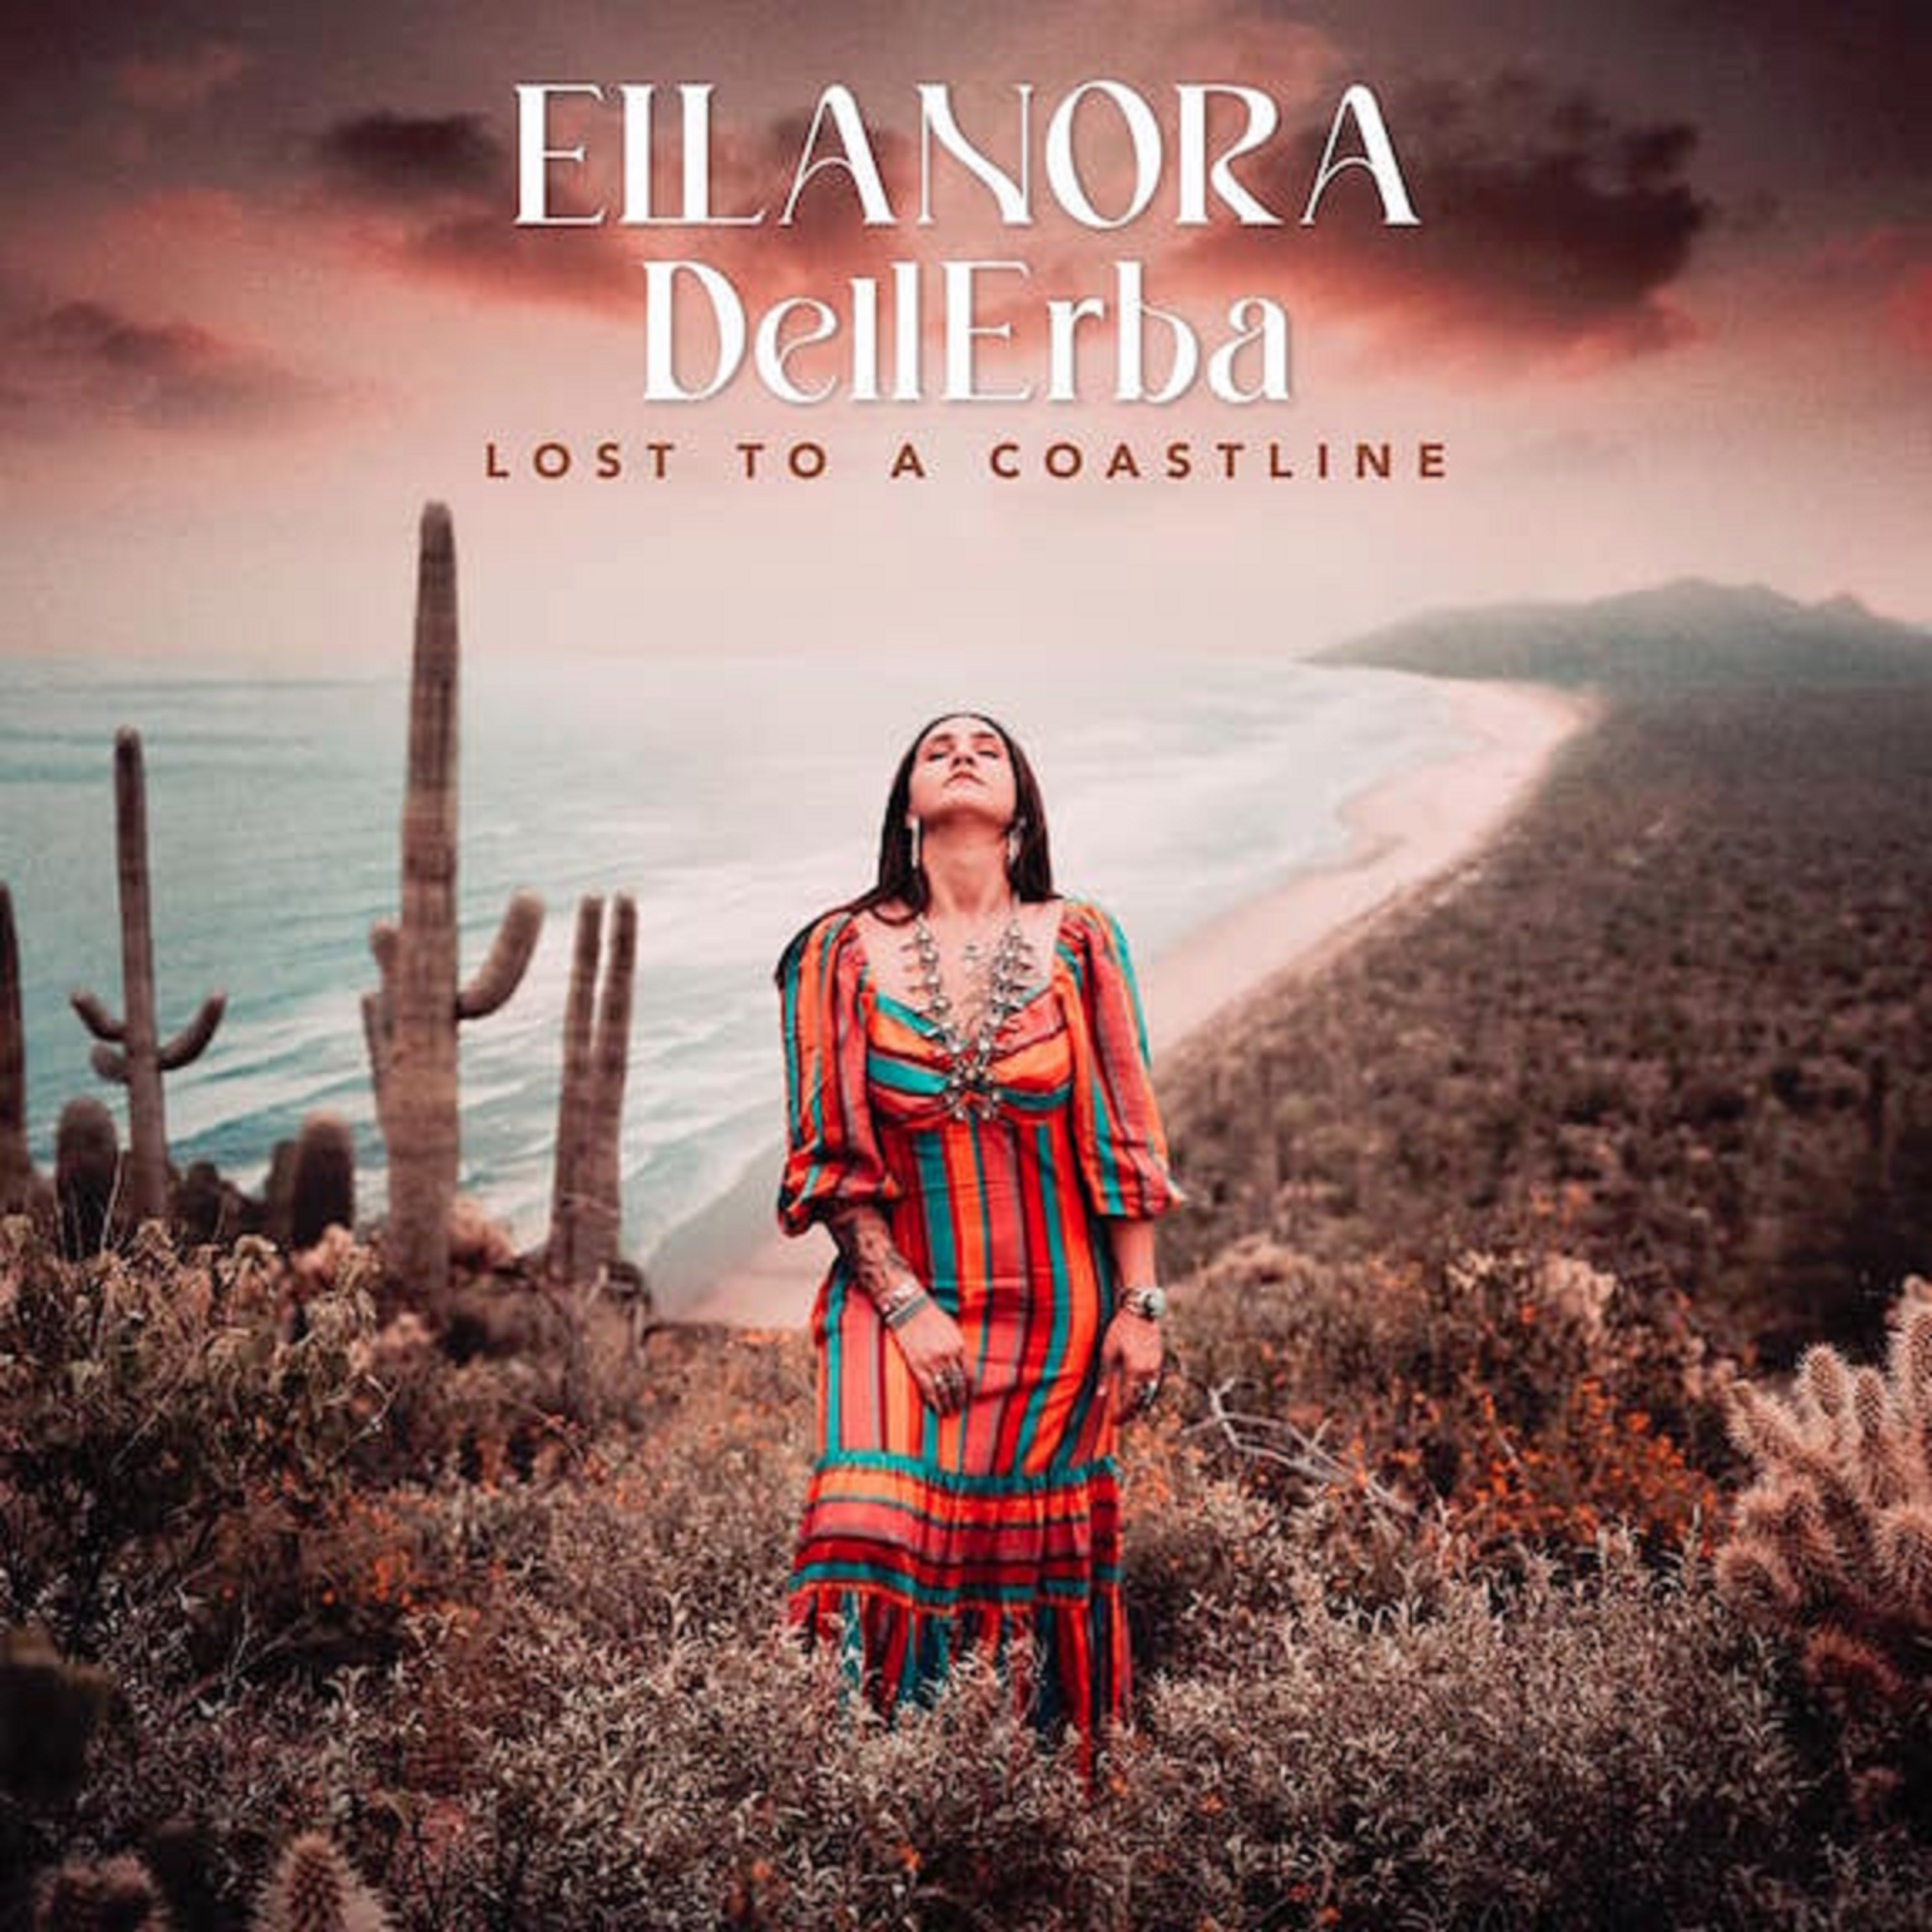 Ellanora DellErba's new album Lost to a Coastline out now